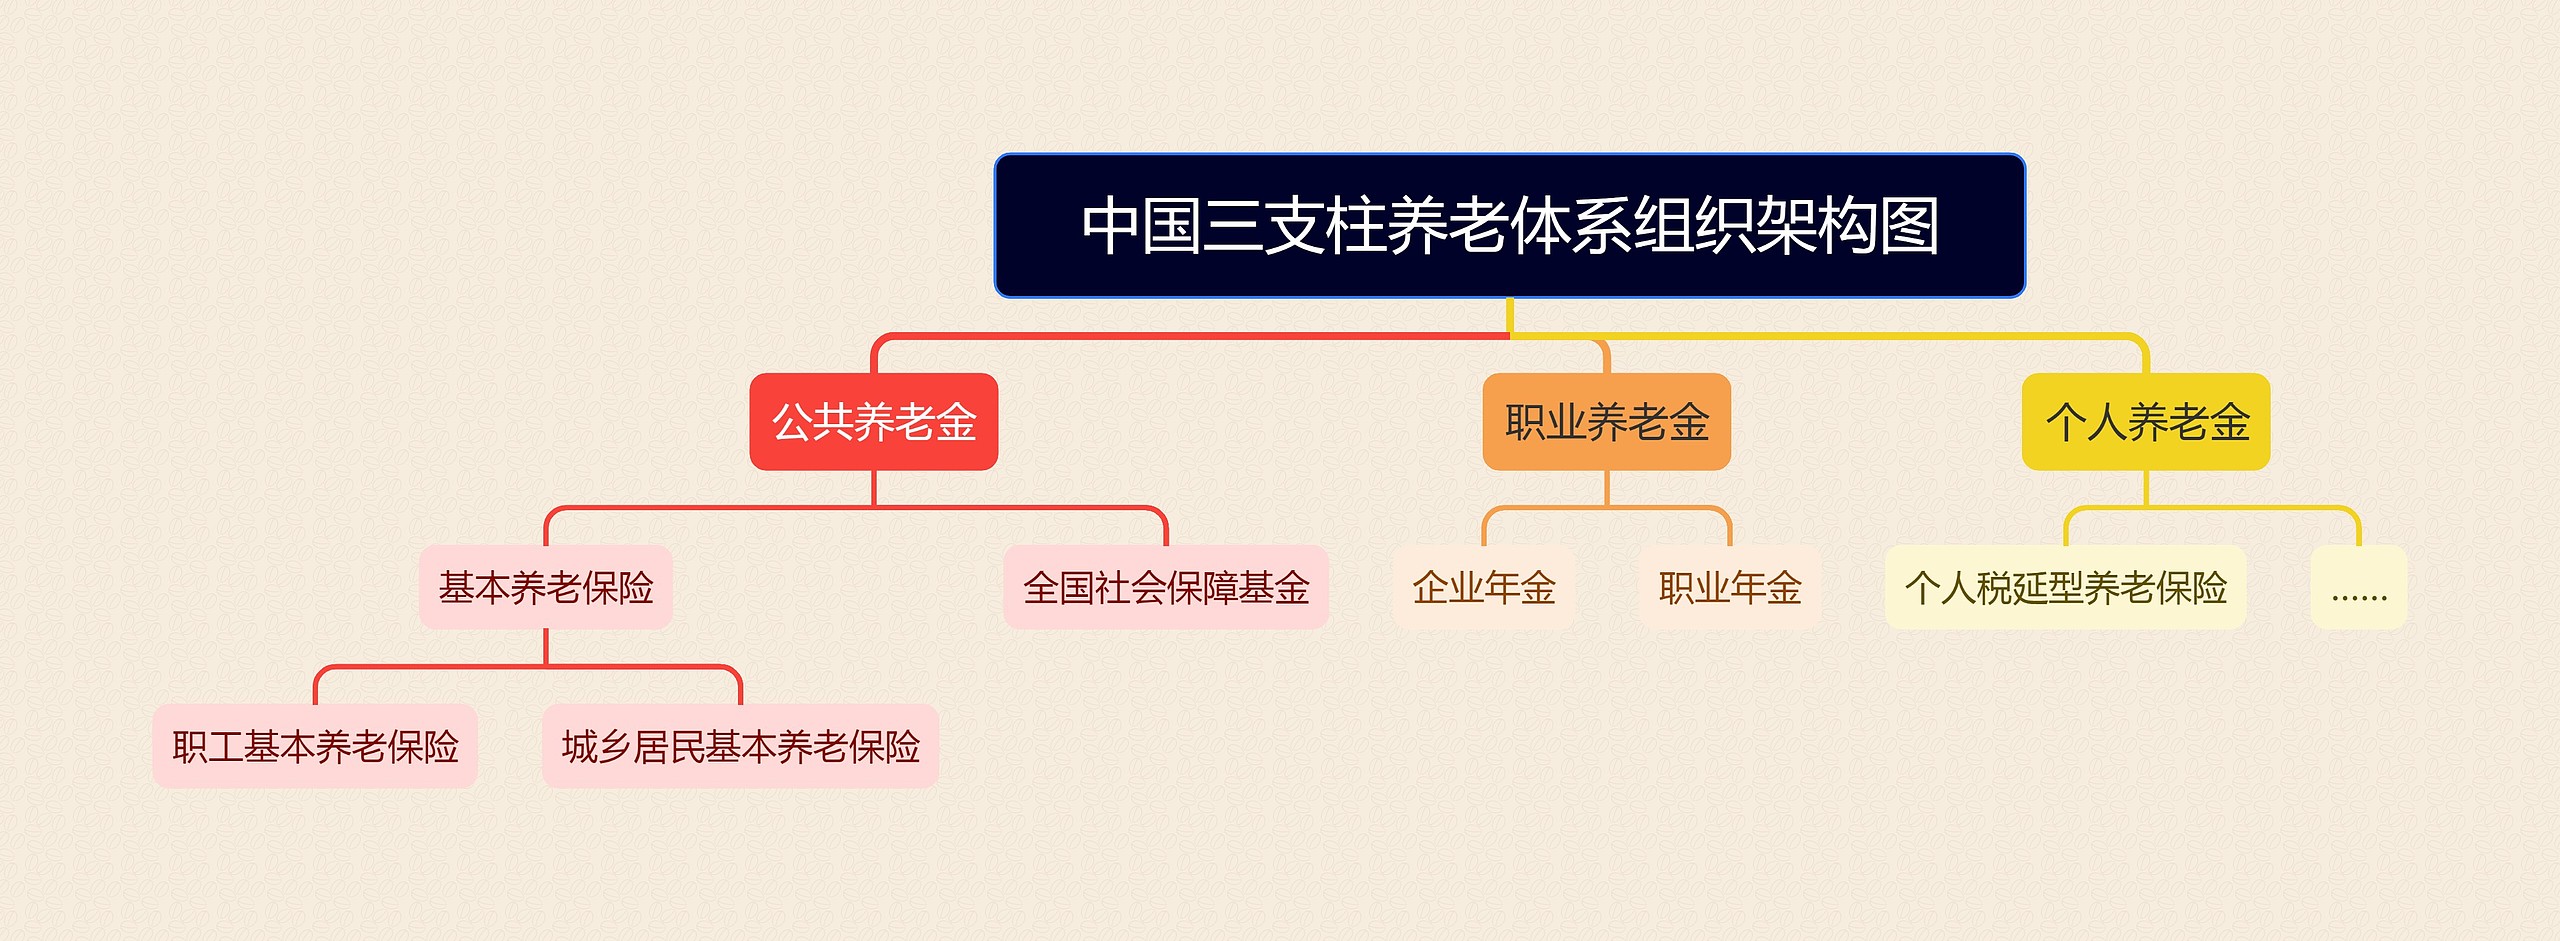 中国三支柱养老体系组织架构图思维导图